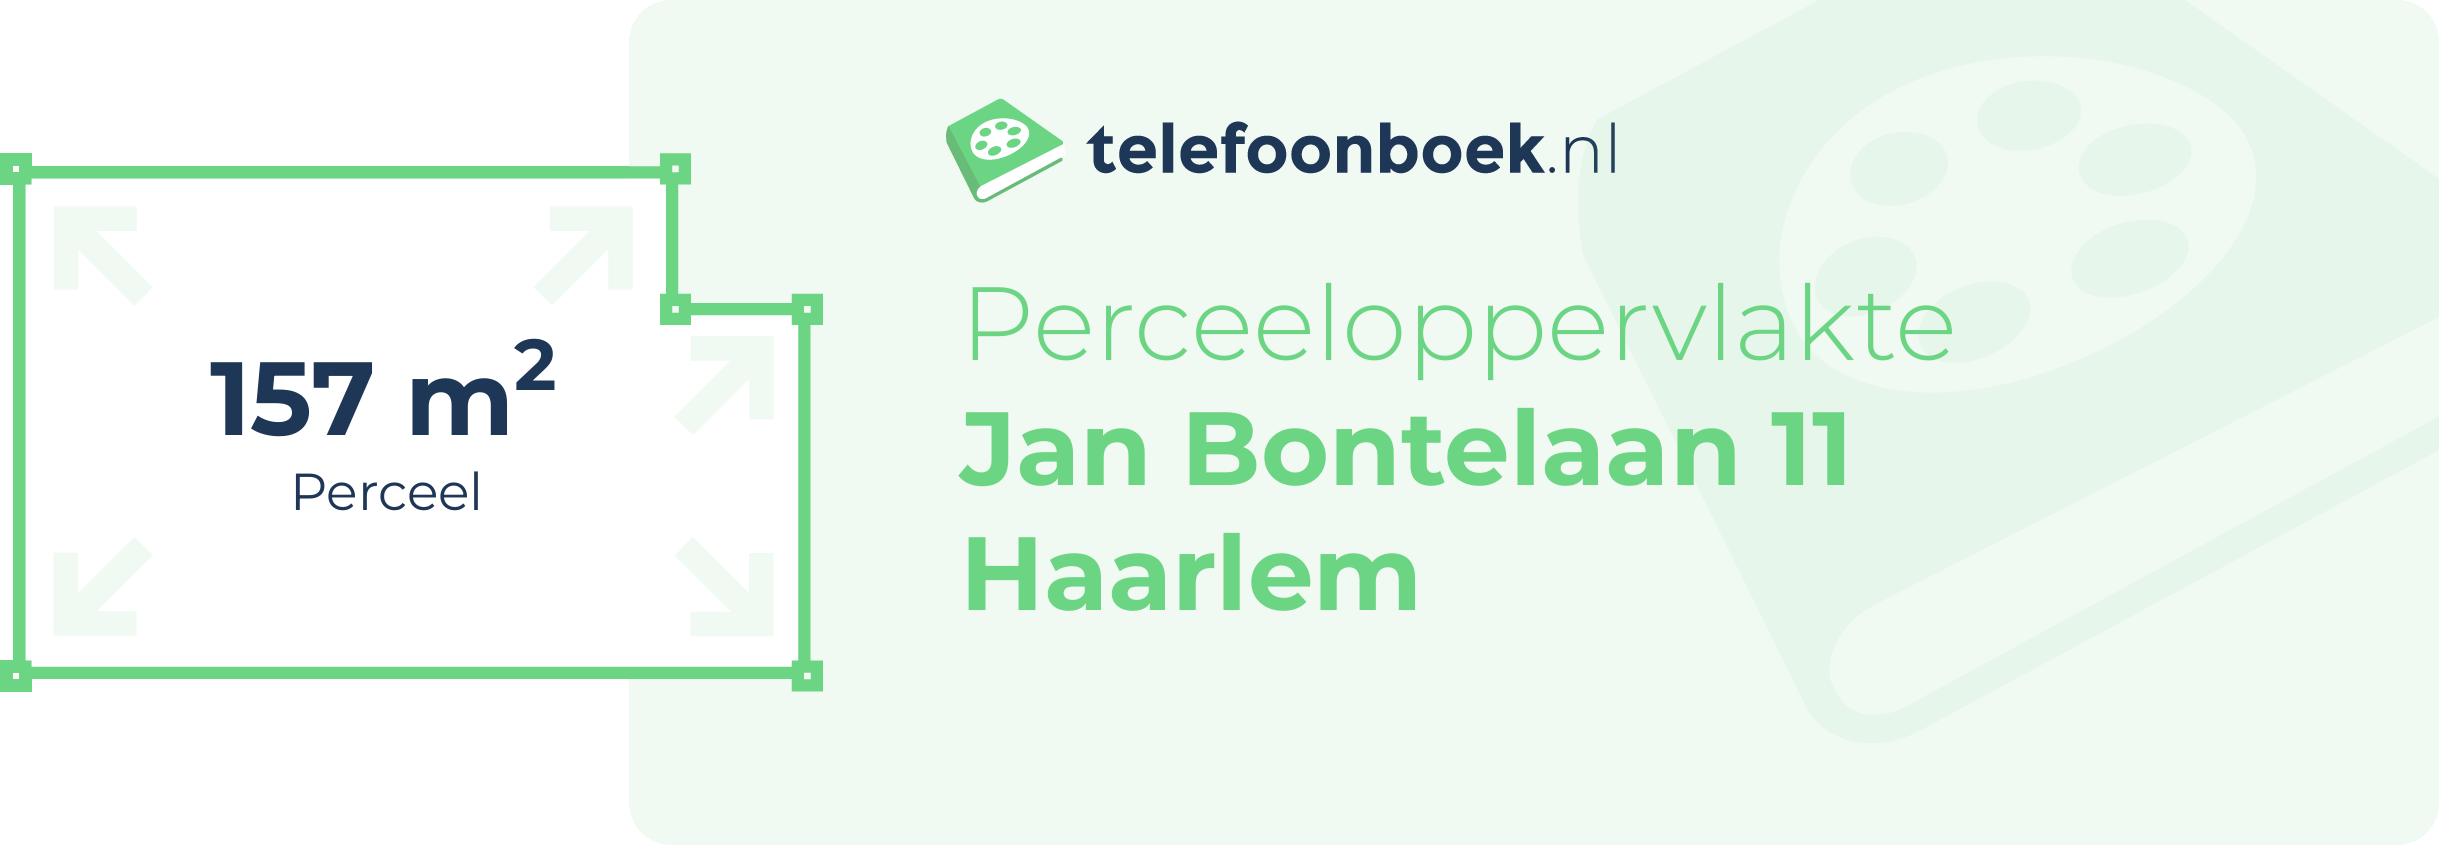 Perceeloppervlakte Jan Bontelaan 11 Haarlem